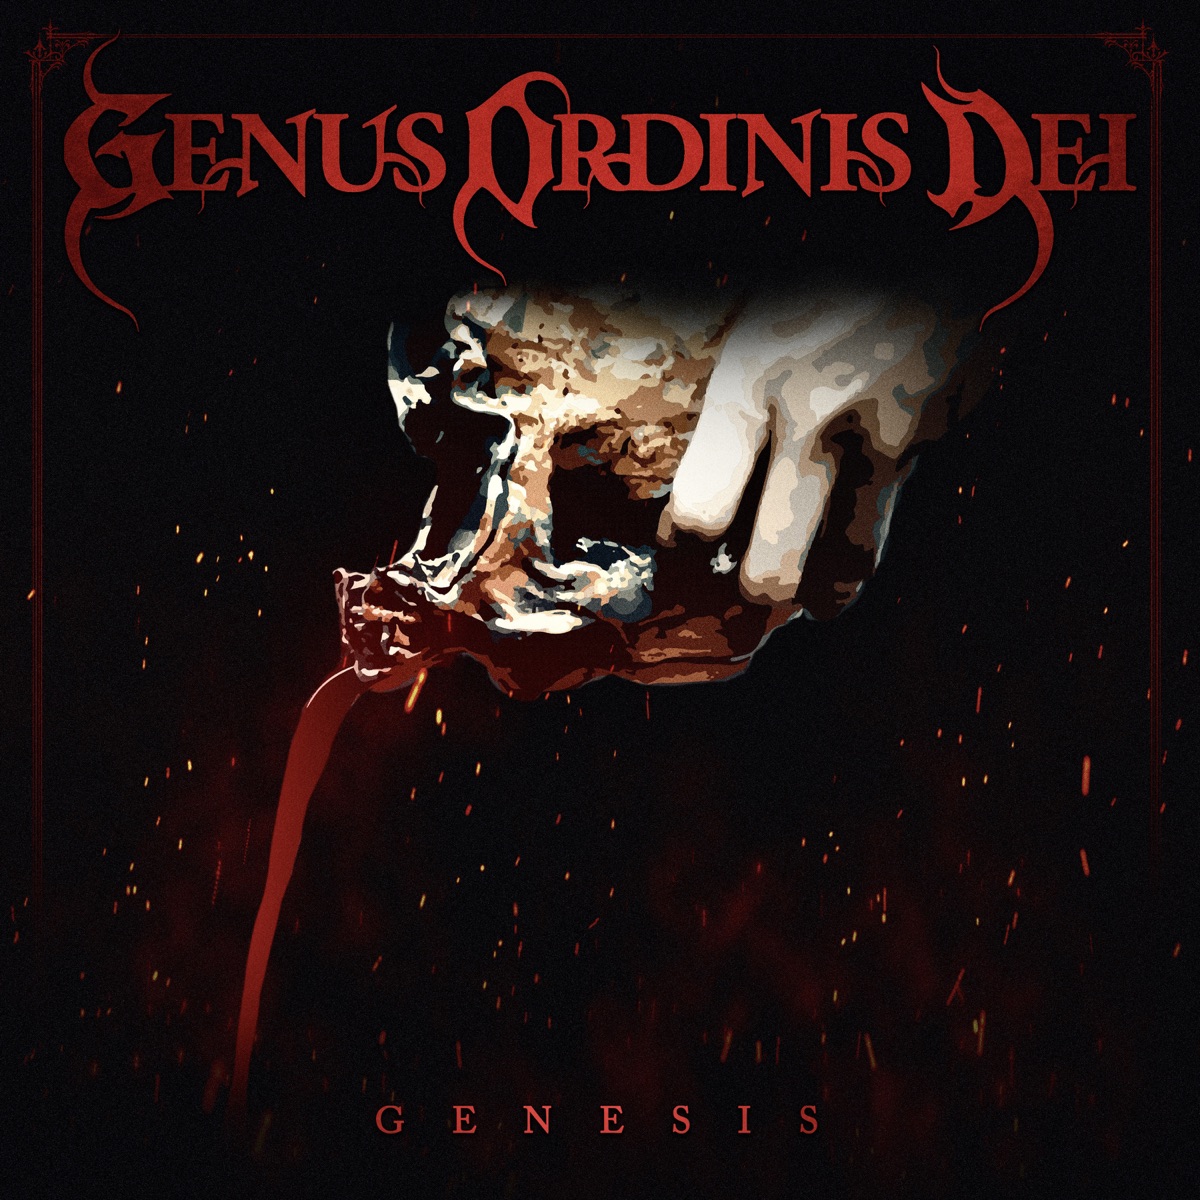 The Beginning - Album by Genus Ordinis Dei - Apple Music